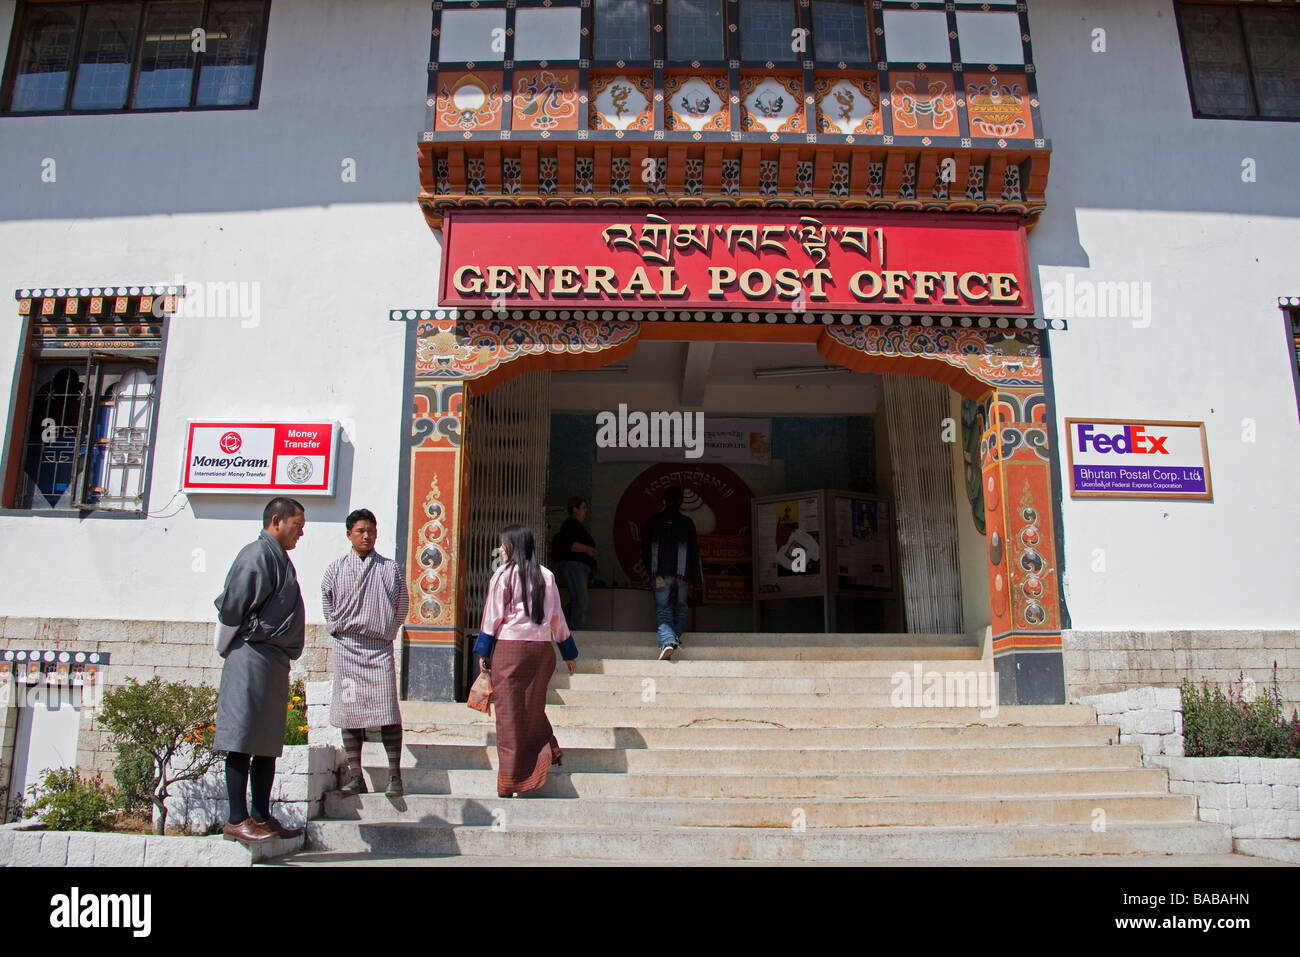 General post office et la banque à Thimphu, Bhoutan Asie 91000 Bhutan-Thimphu Banque D'Images